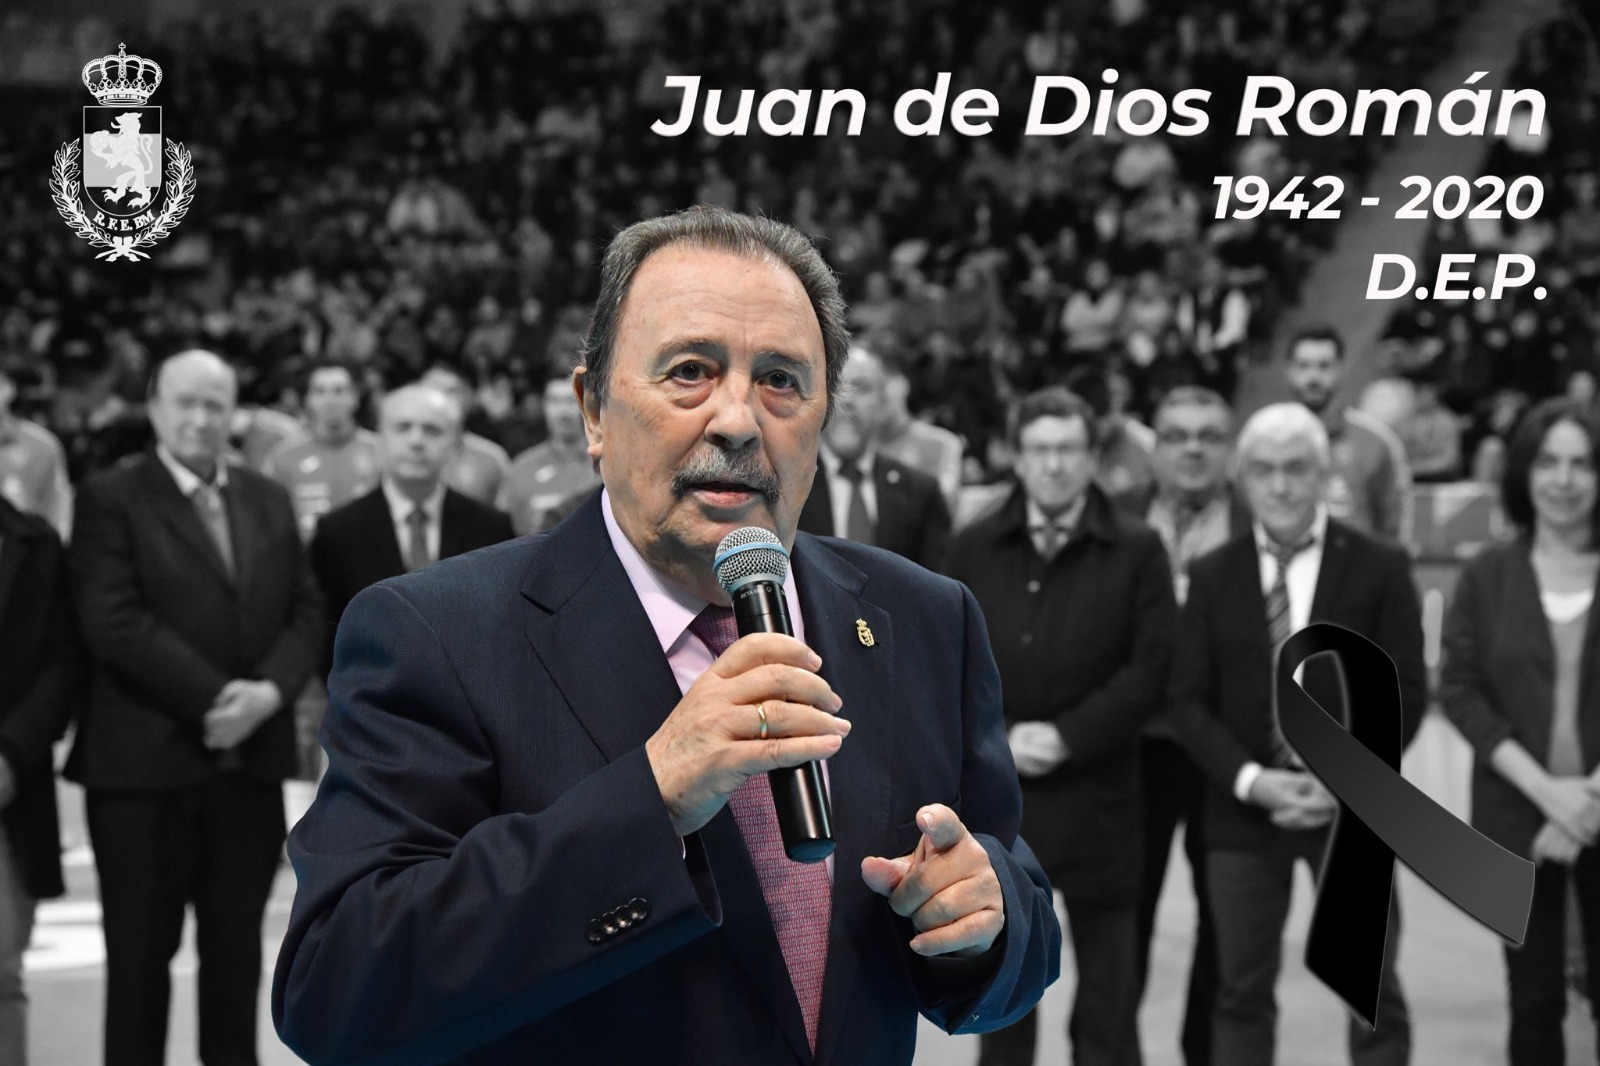 Juan de Dios Roman Seco